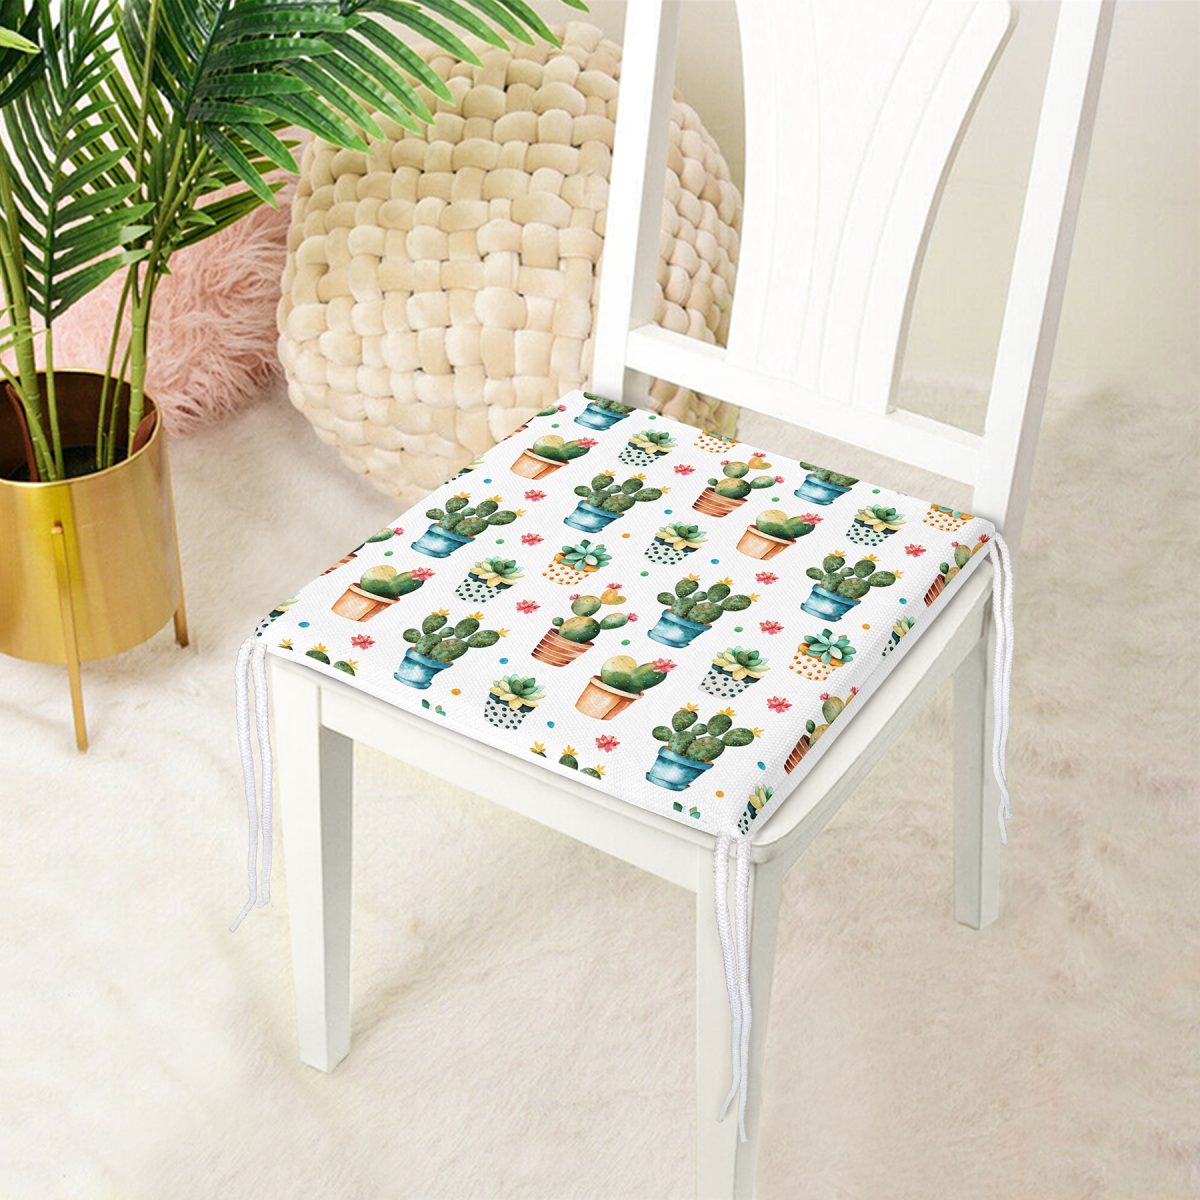 Saksıda Sevimli Kaktüsler Tasarımlı Dekoratif Modern Fermuarlı Sandalye Minderi Realhomes